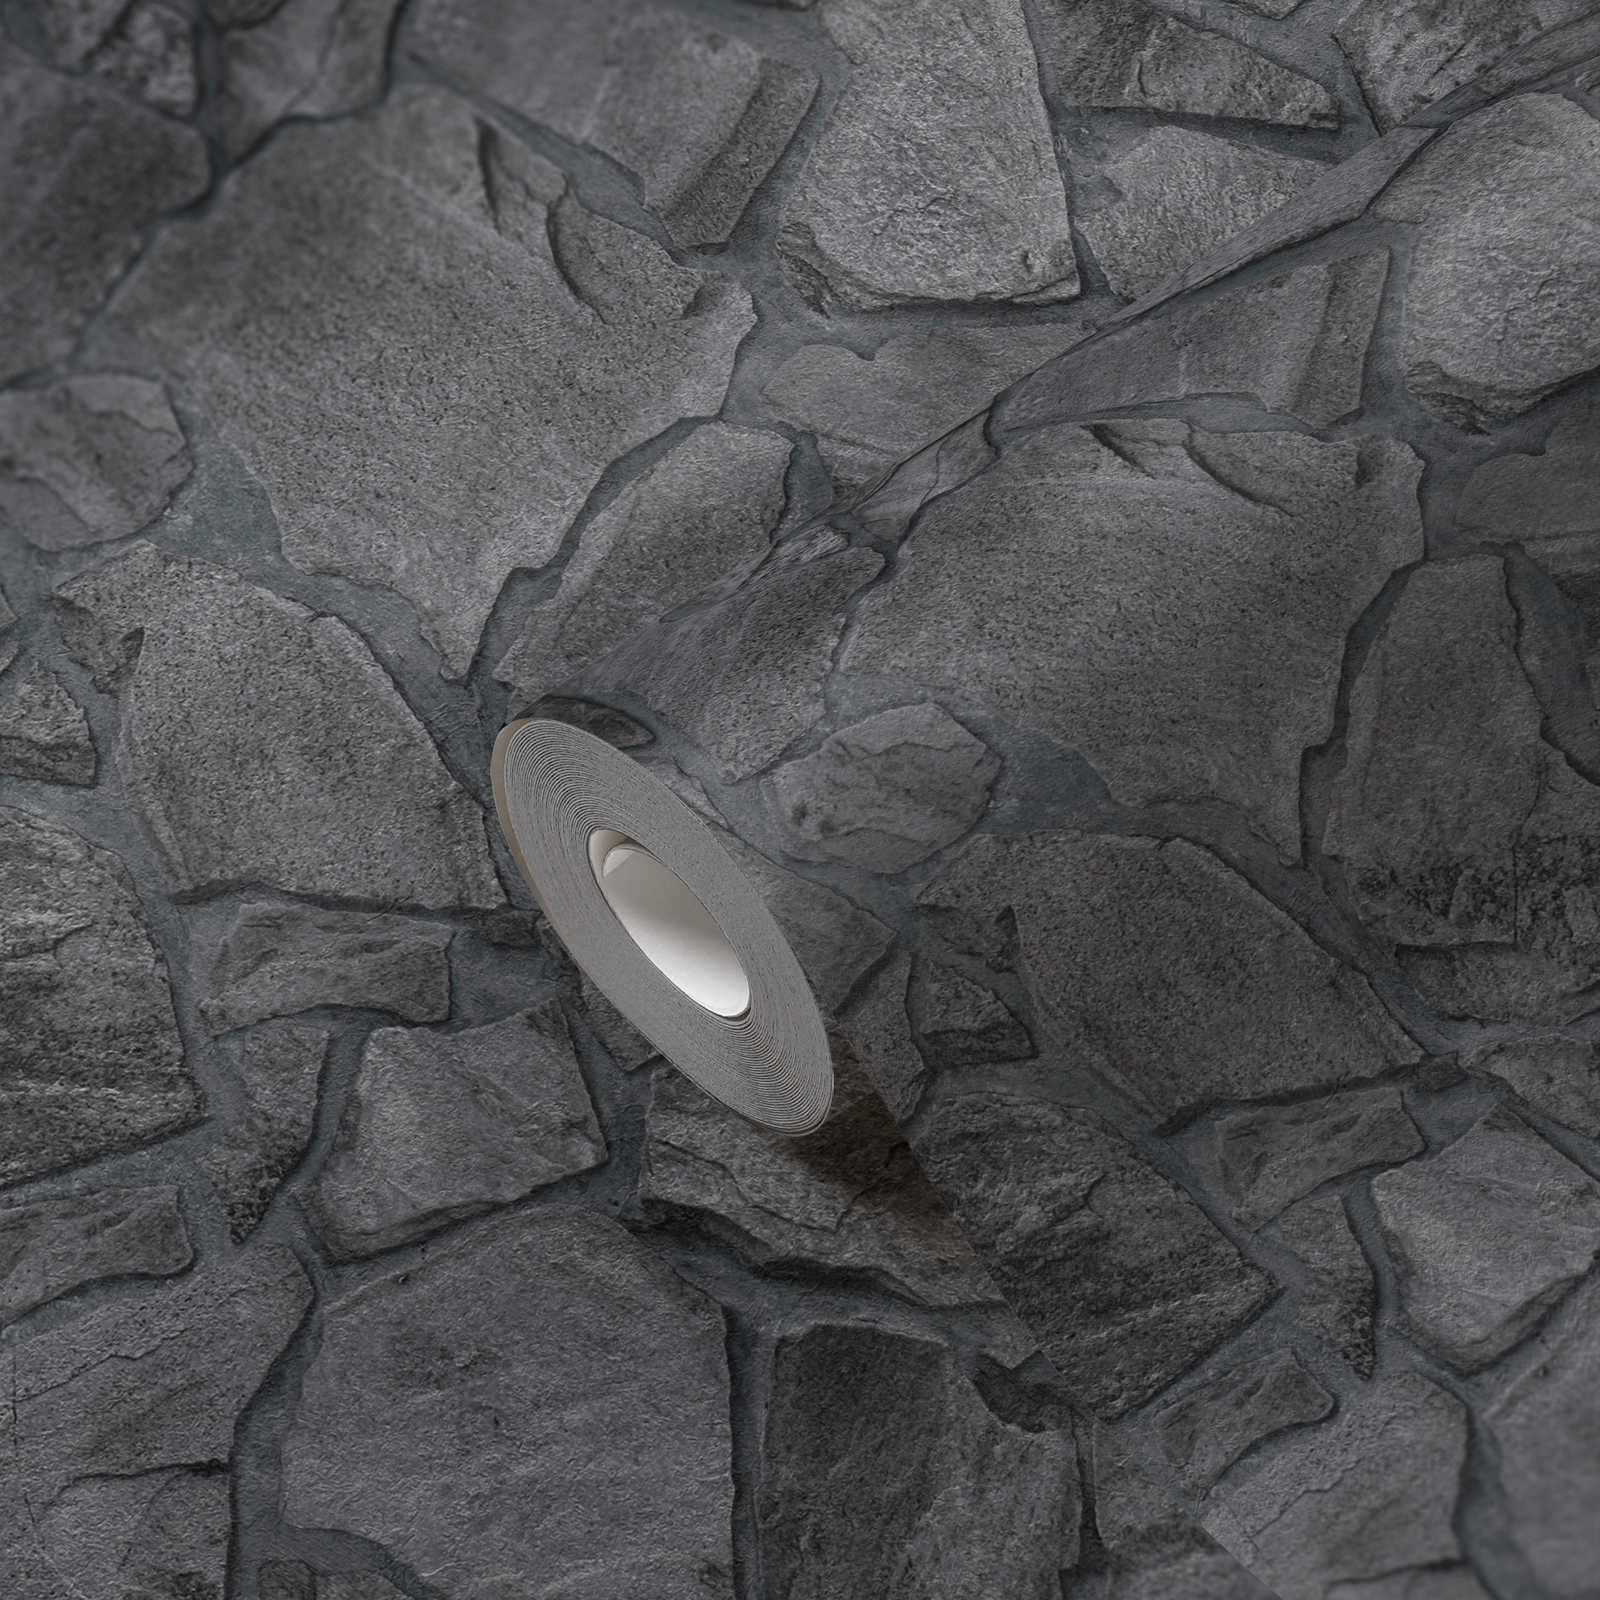             Papel pintado con aspecto de piedra natural negra
        